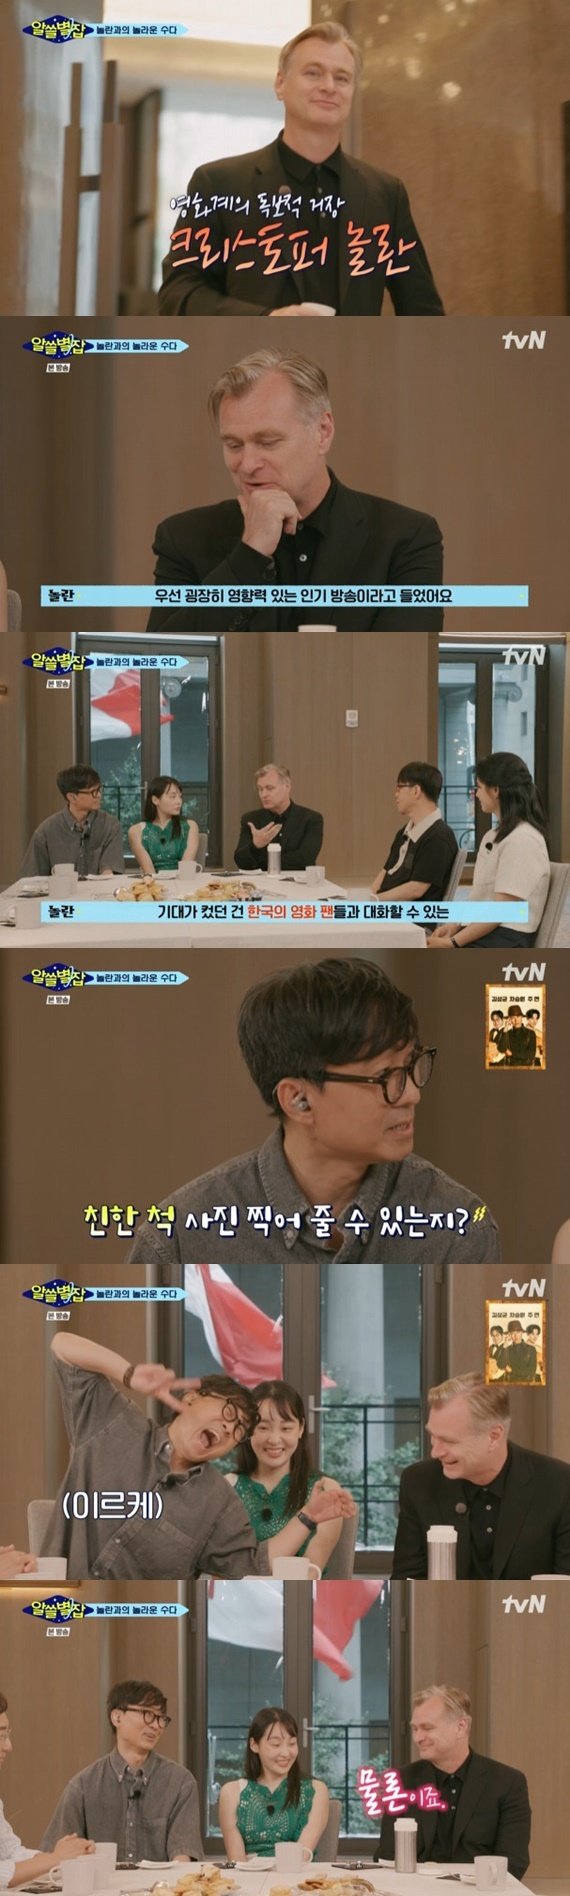 tvN ‘알쓸별잡’ 캡처